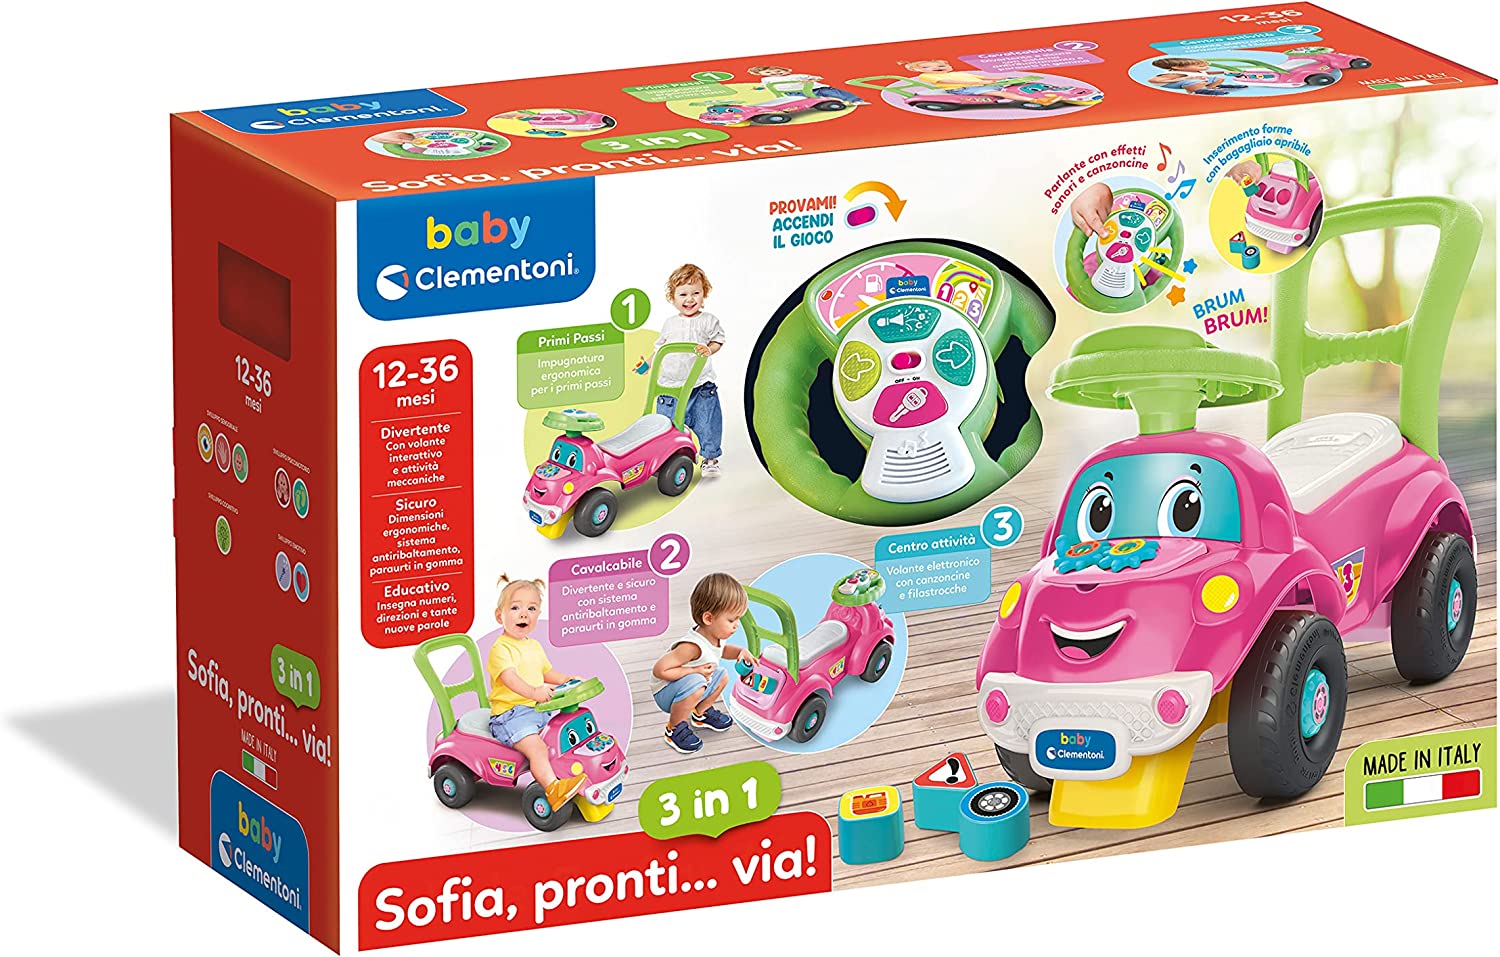 Baby Clementoni - Sofia Pronti Via 3 in 1 (Italian Edition)